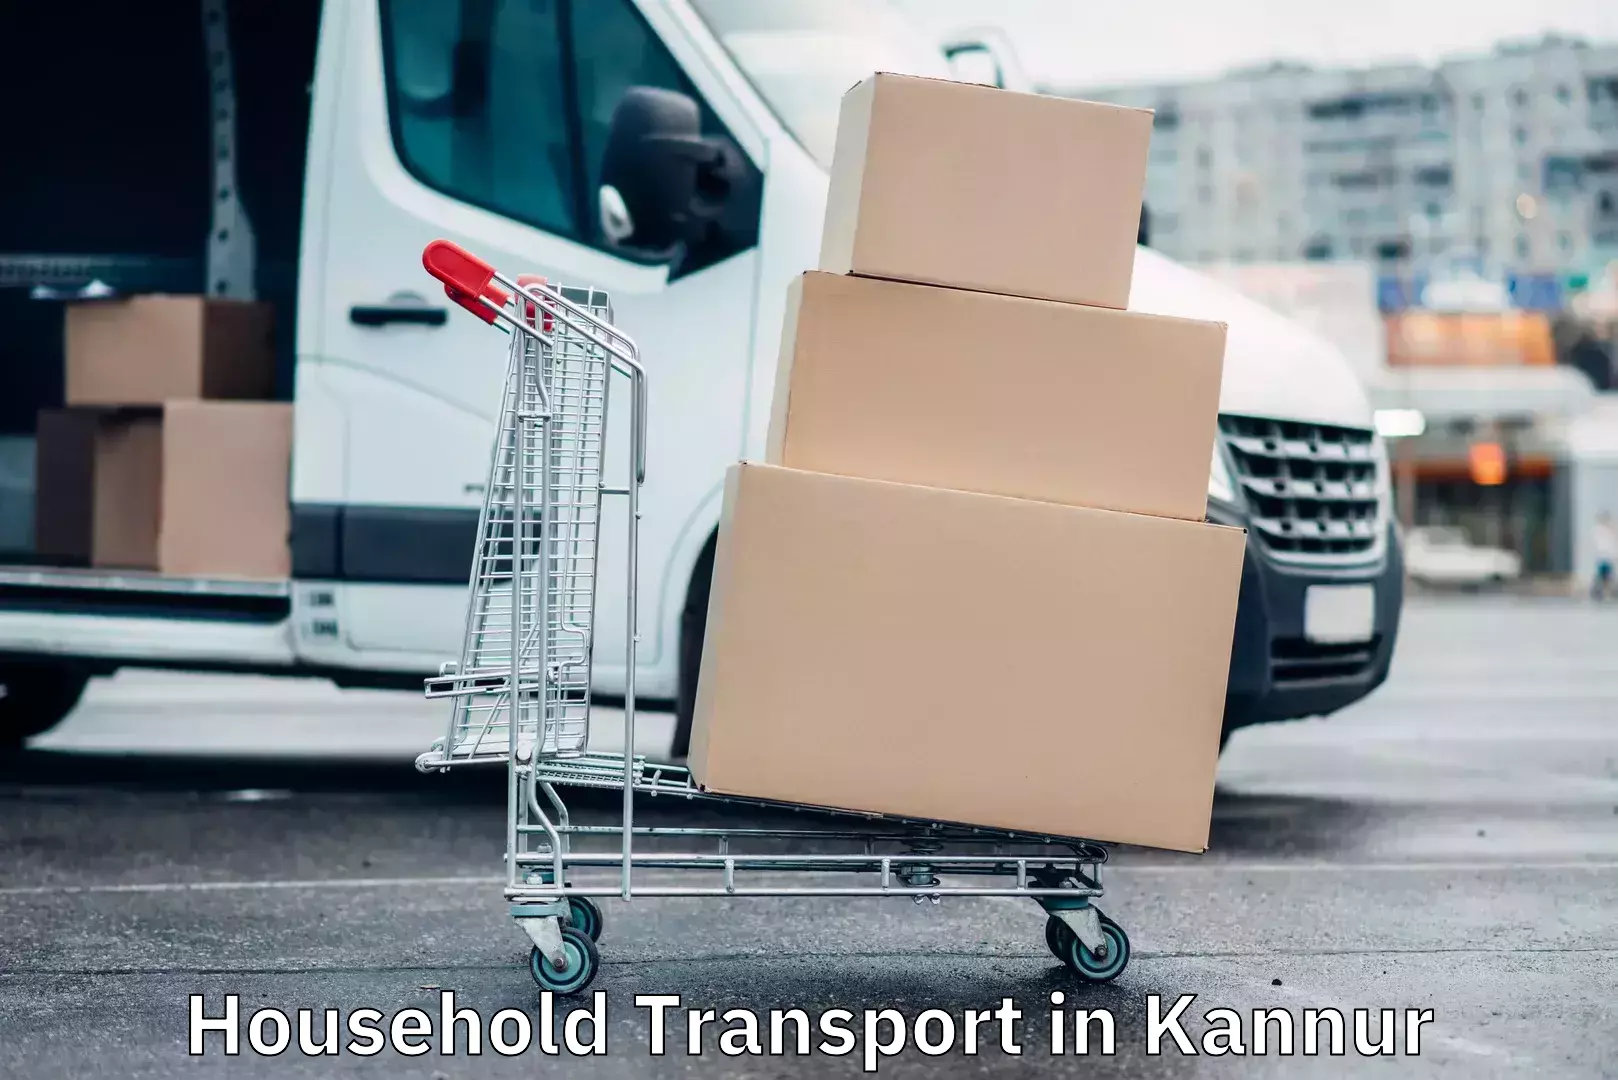 Household goods transporters in Kannur